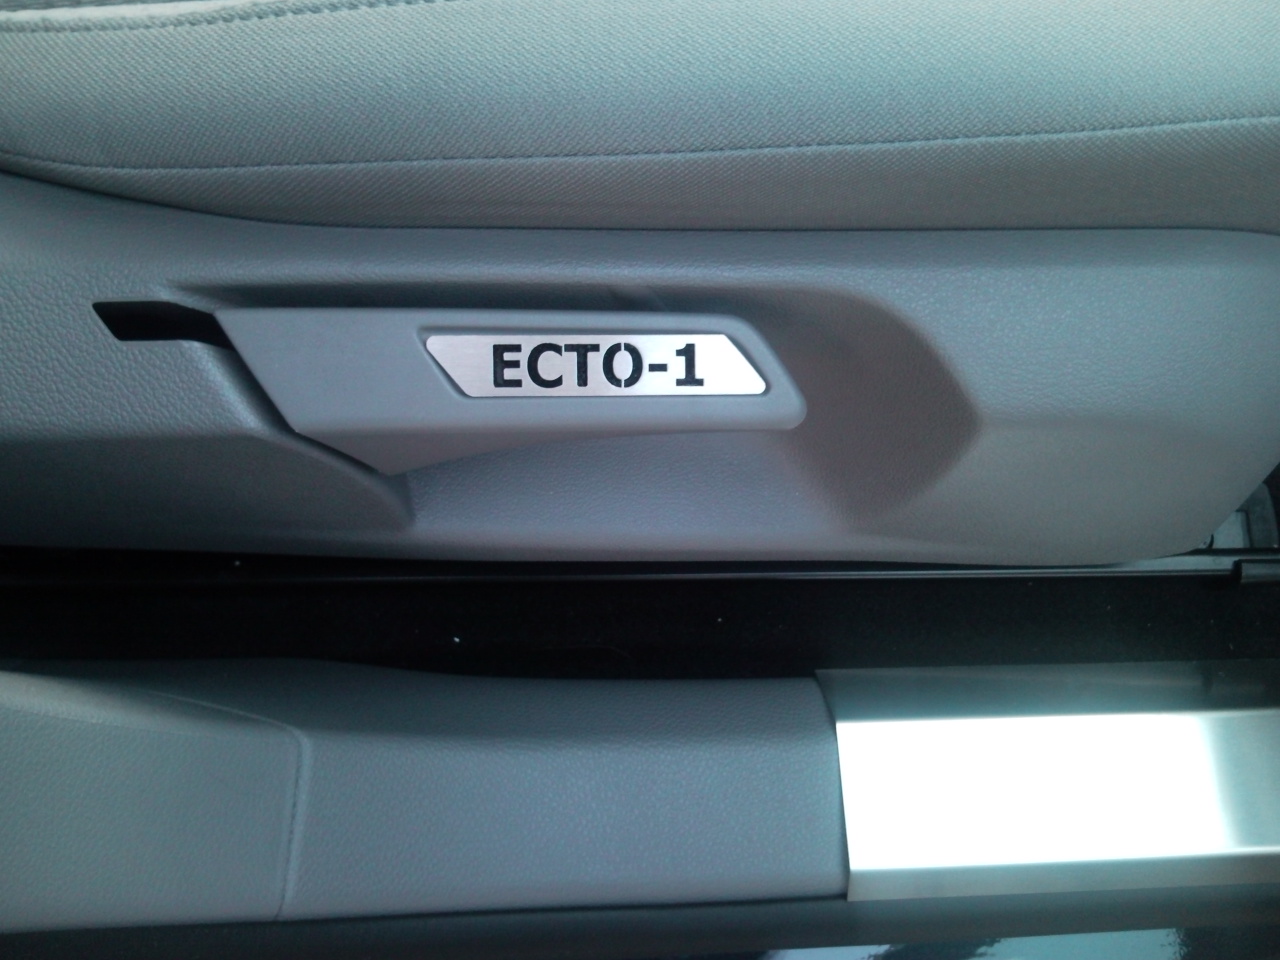 Inserto sedile ECTO-1
